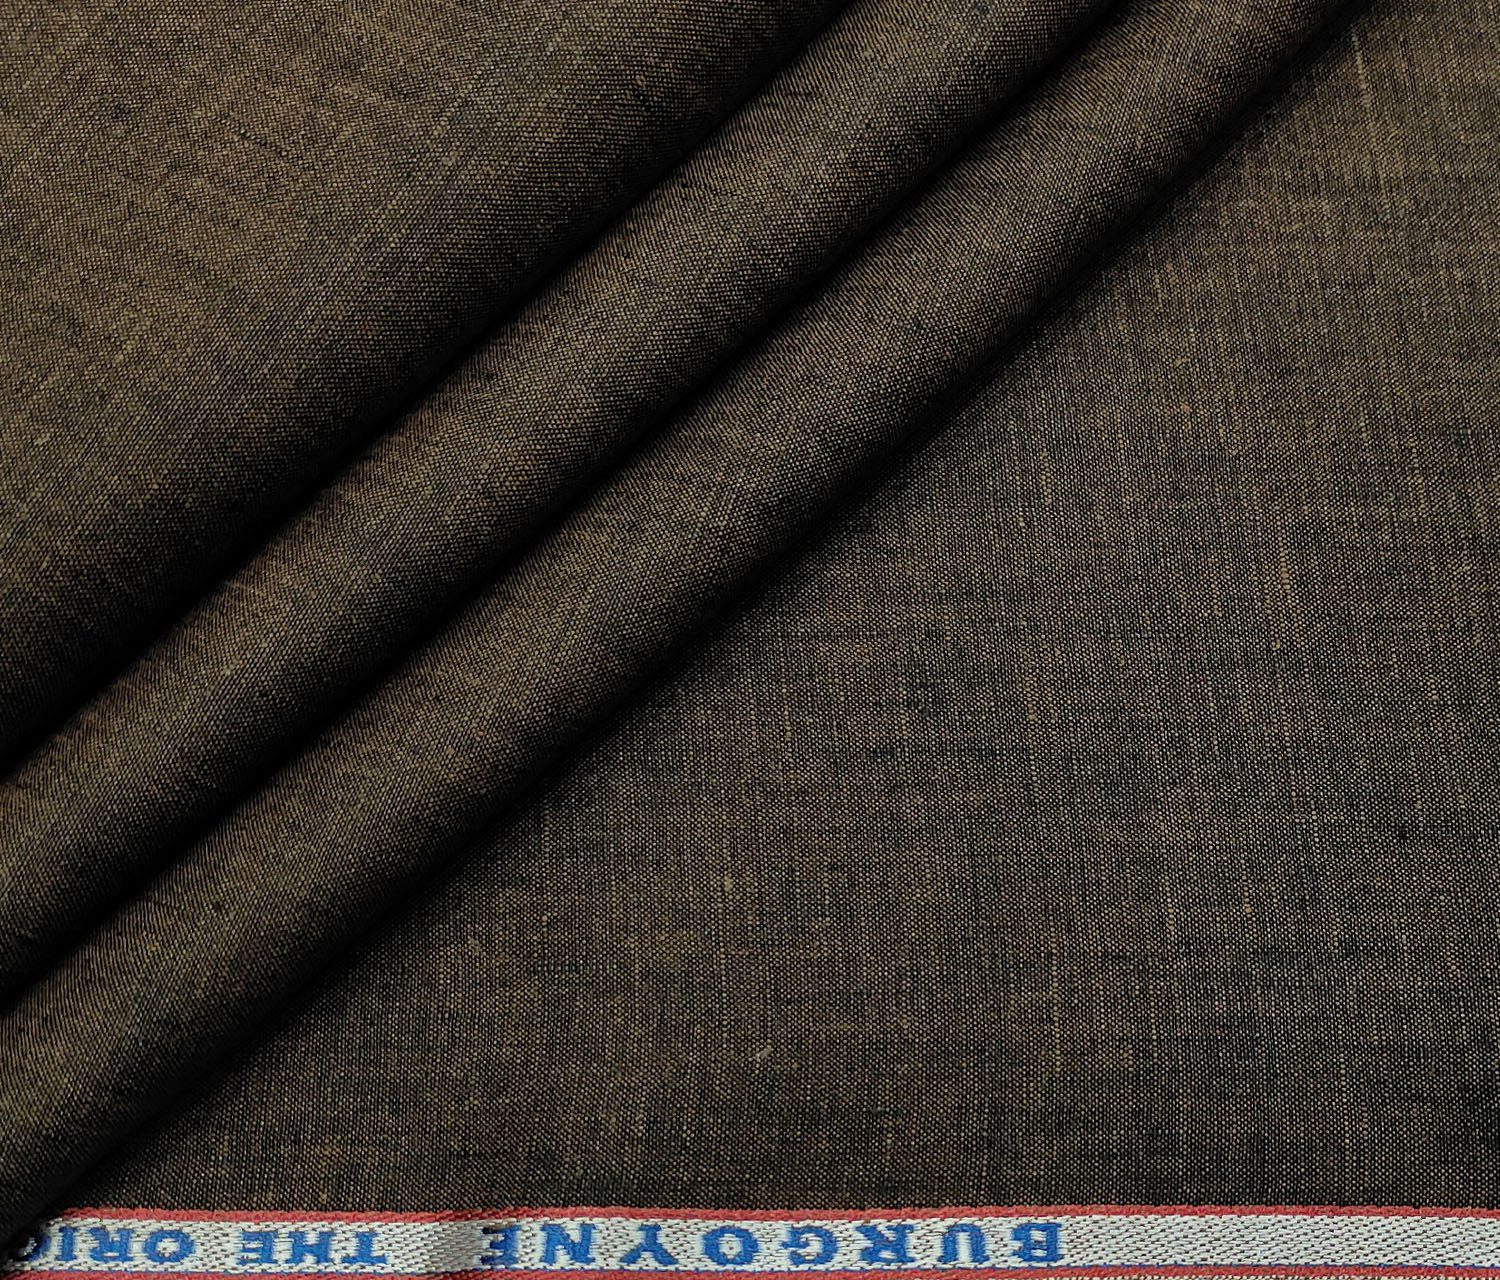 Burgoyne Men's Linen Solids Unstitched Shirting Fabric (Dark Brown)